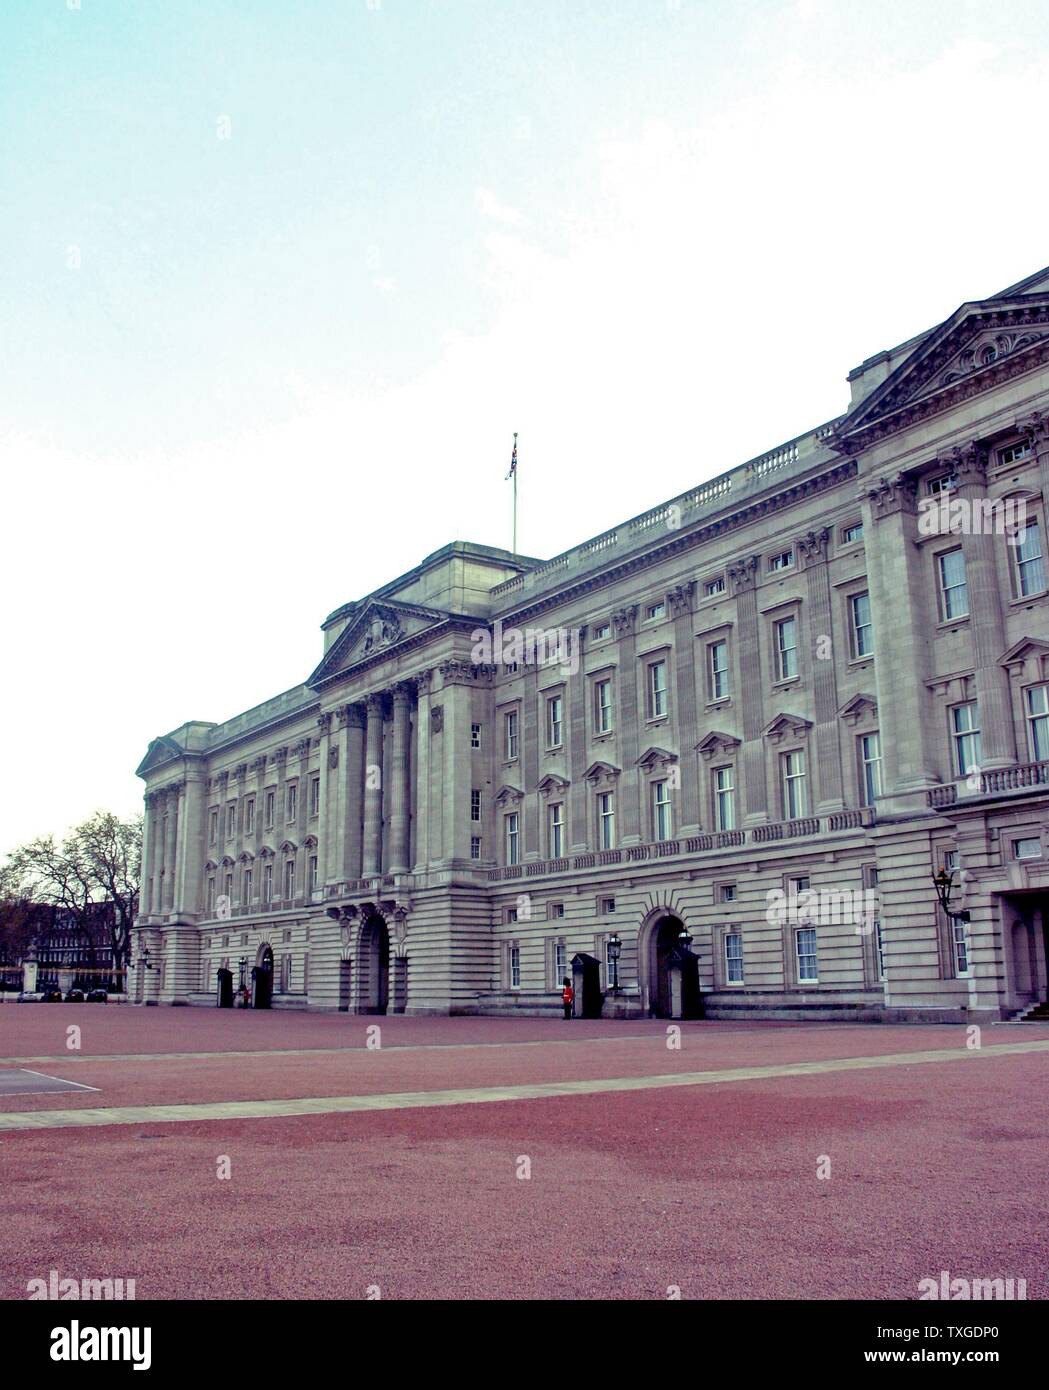 Exterieur des Buckingham Palace, die Residenz und wichtigsten Arbeitsplatz der Monarchie des Vereinigten Königreichs. Datierte 2014 Stockfoto